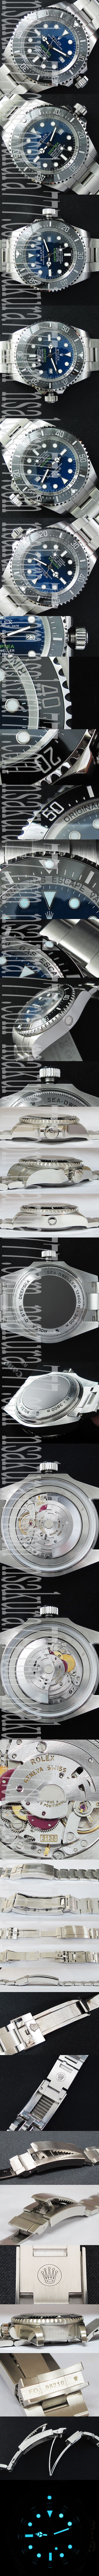 スーパーコピー時計ロレックス シードゥエラーディープシー D-BLUE3135ムーブメント noob工場 v7 バージョン - ウインドウを閉じる